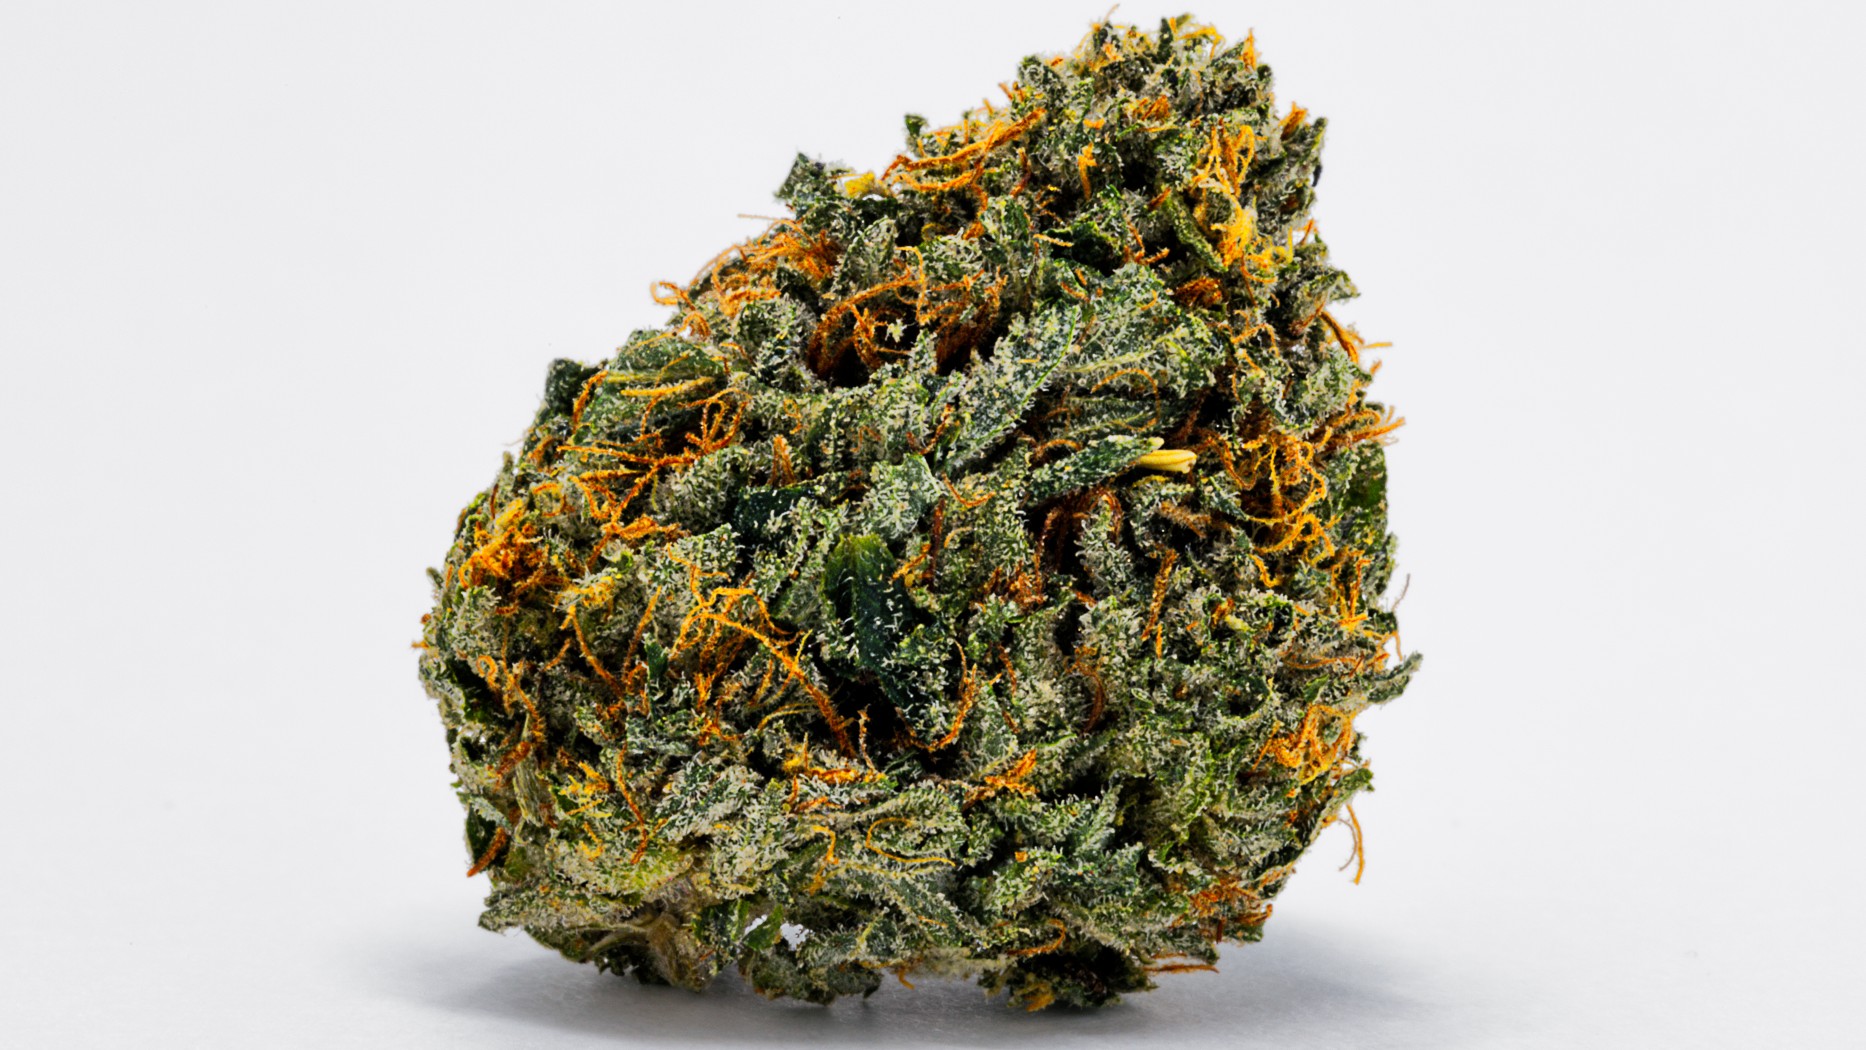 A close-up image of skunk marijuana.